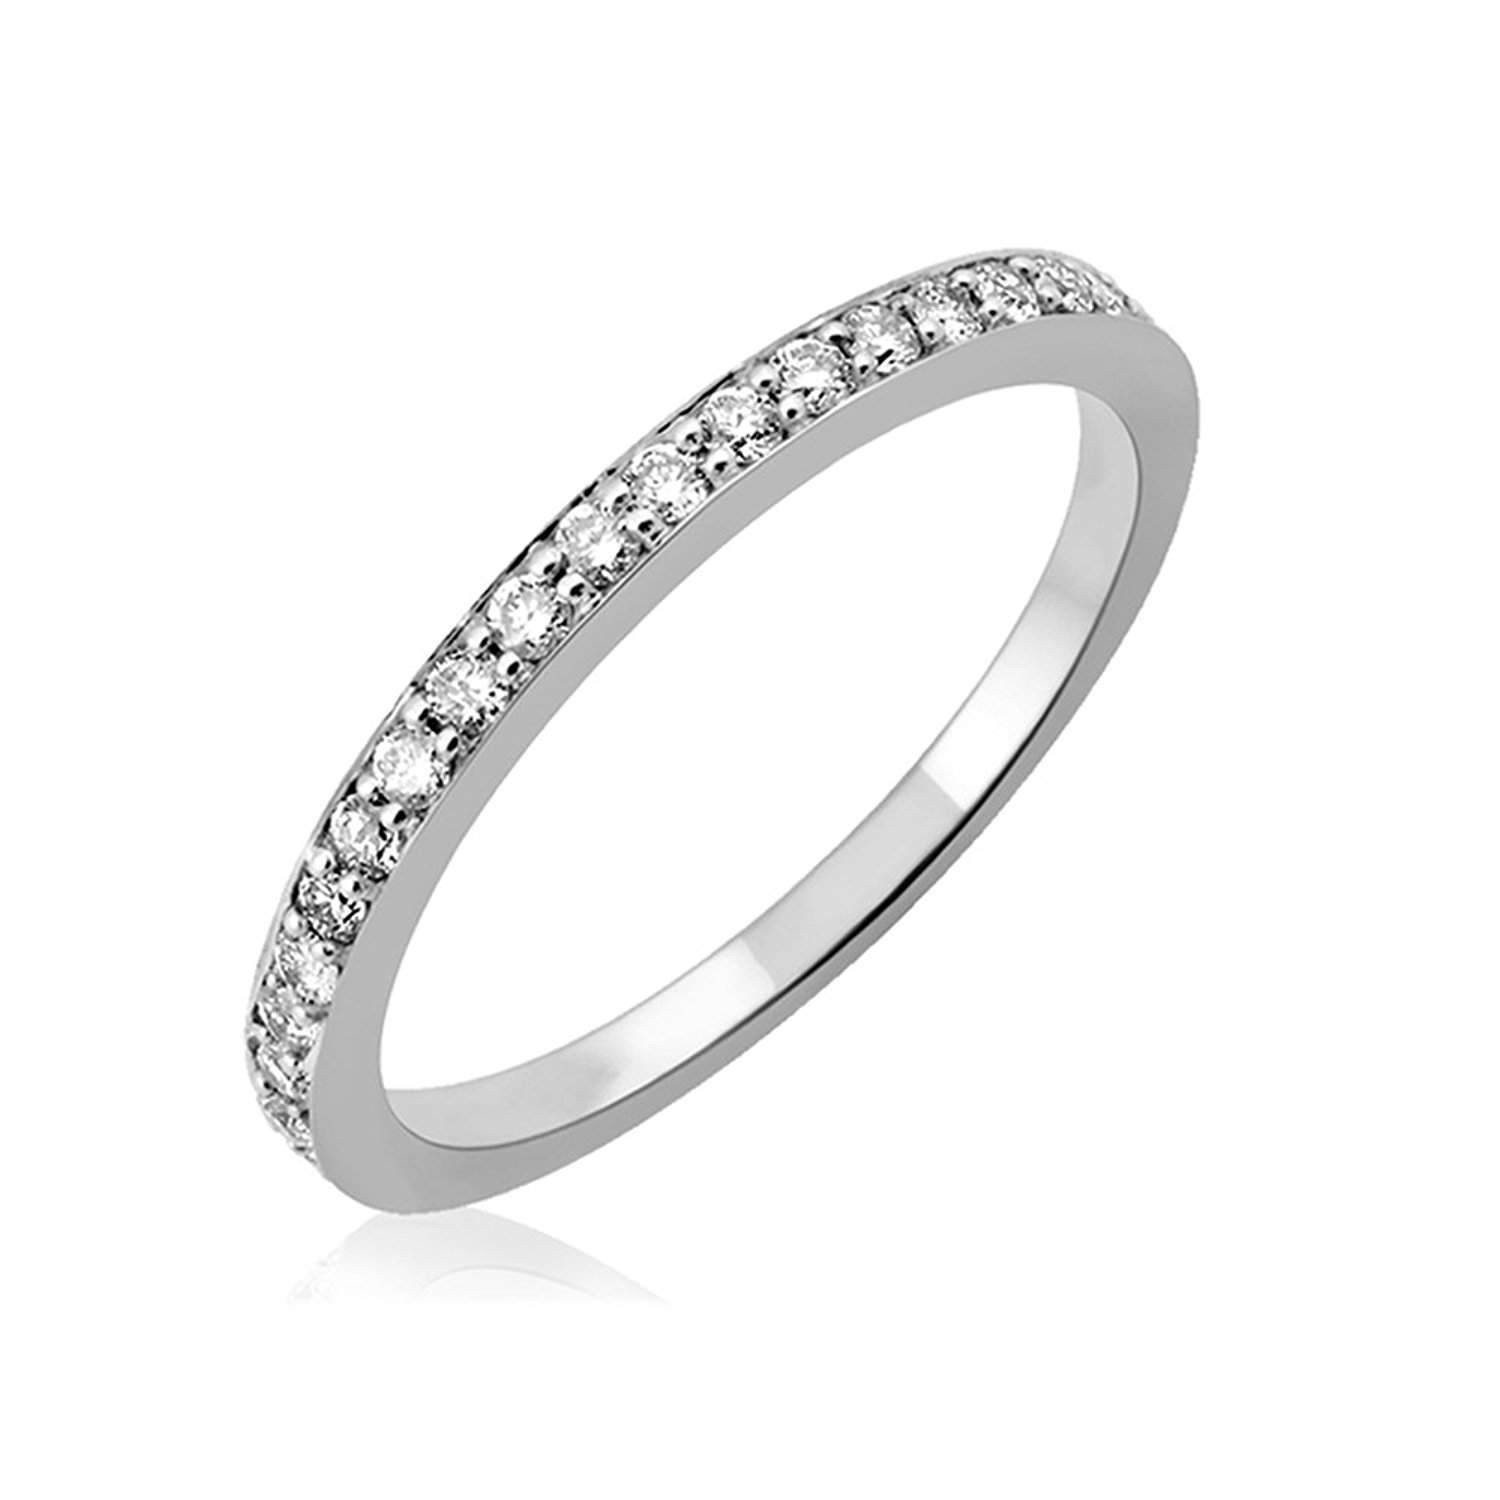 Best Wedding Rings For Women
 50 Best Wedding Rings for Men & Women